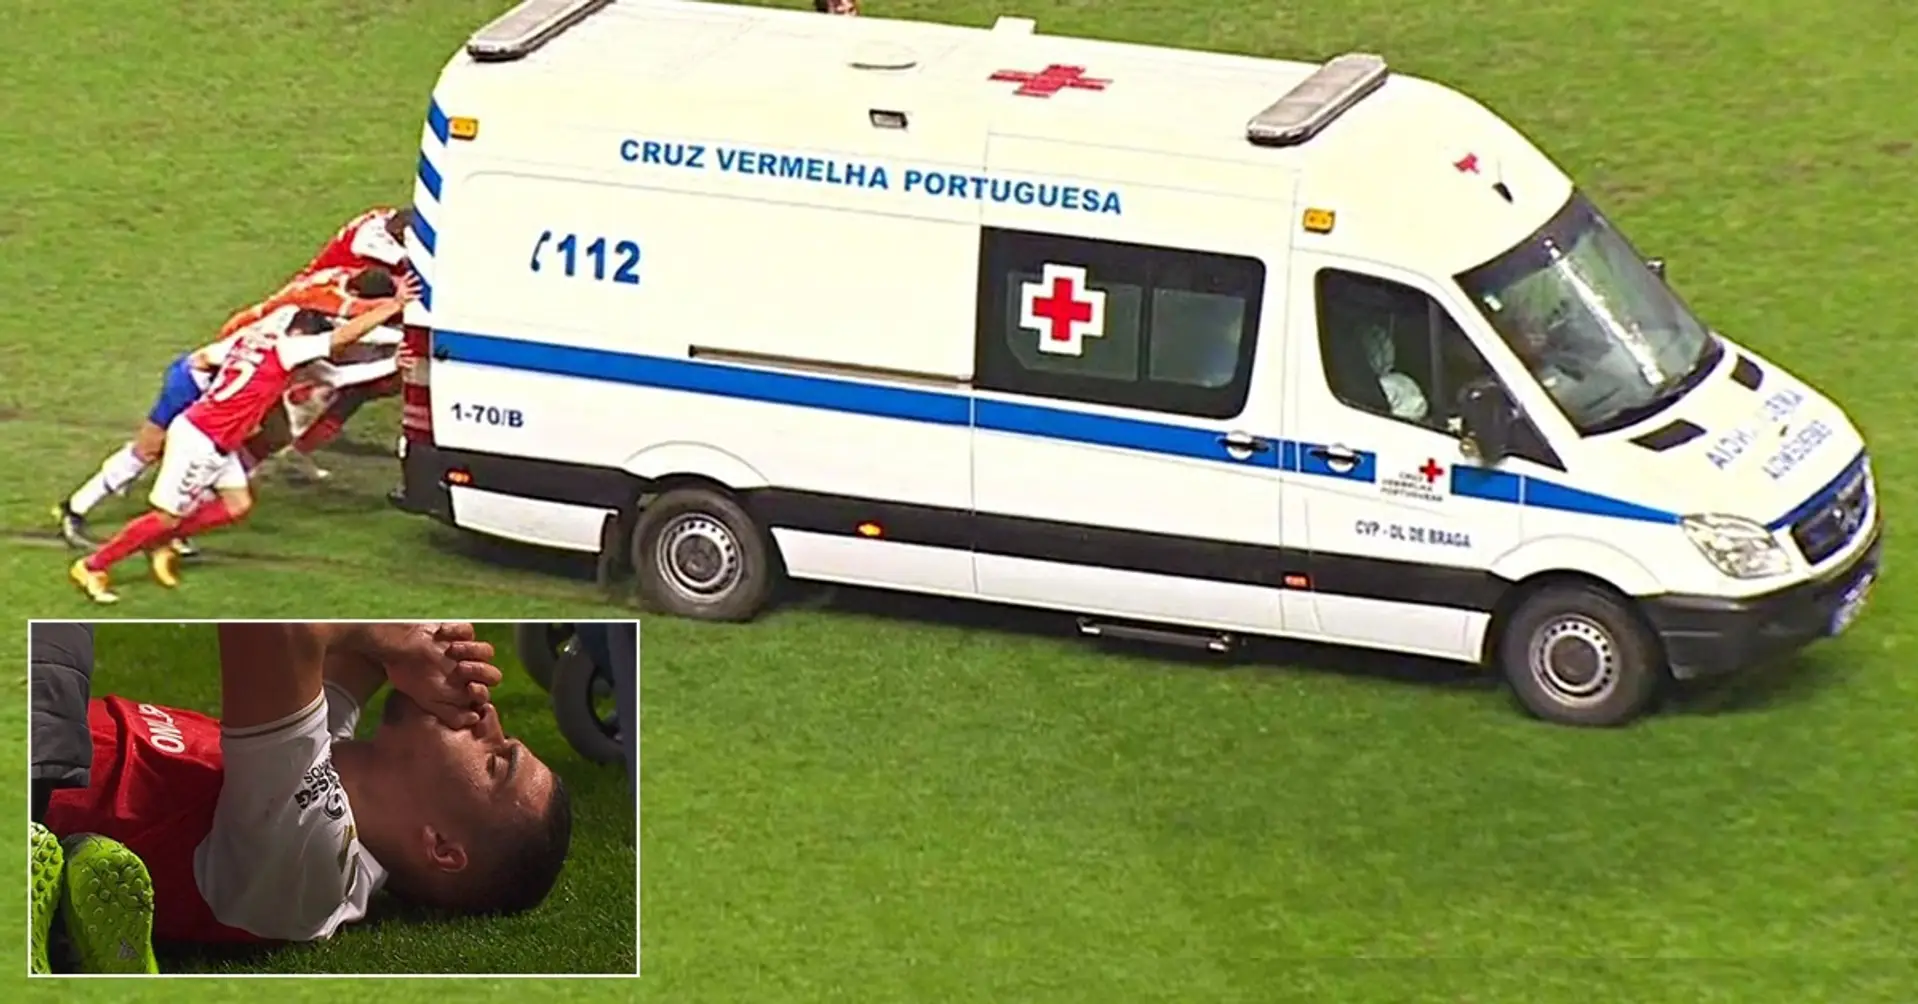 Jugadores portugueses empujan una ambulancia fuera del terreno de juego después de que el defensa del Braga sufre una lesión horrible